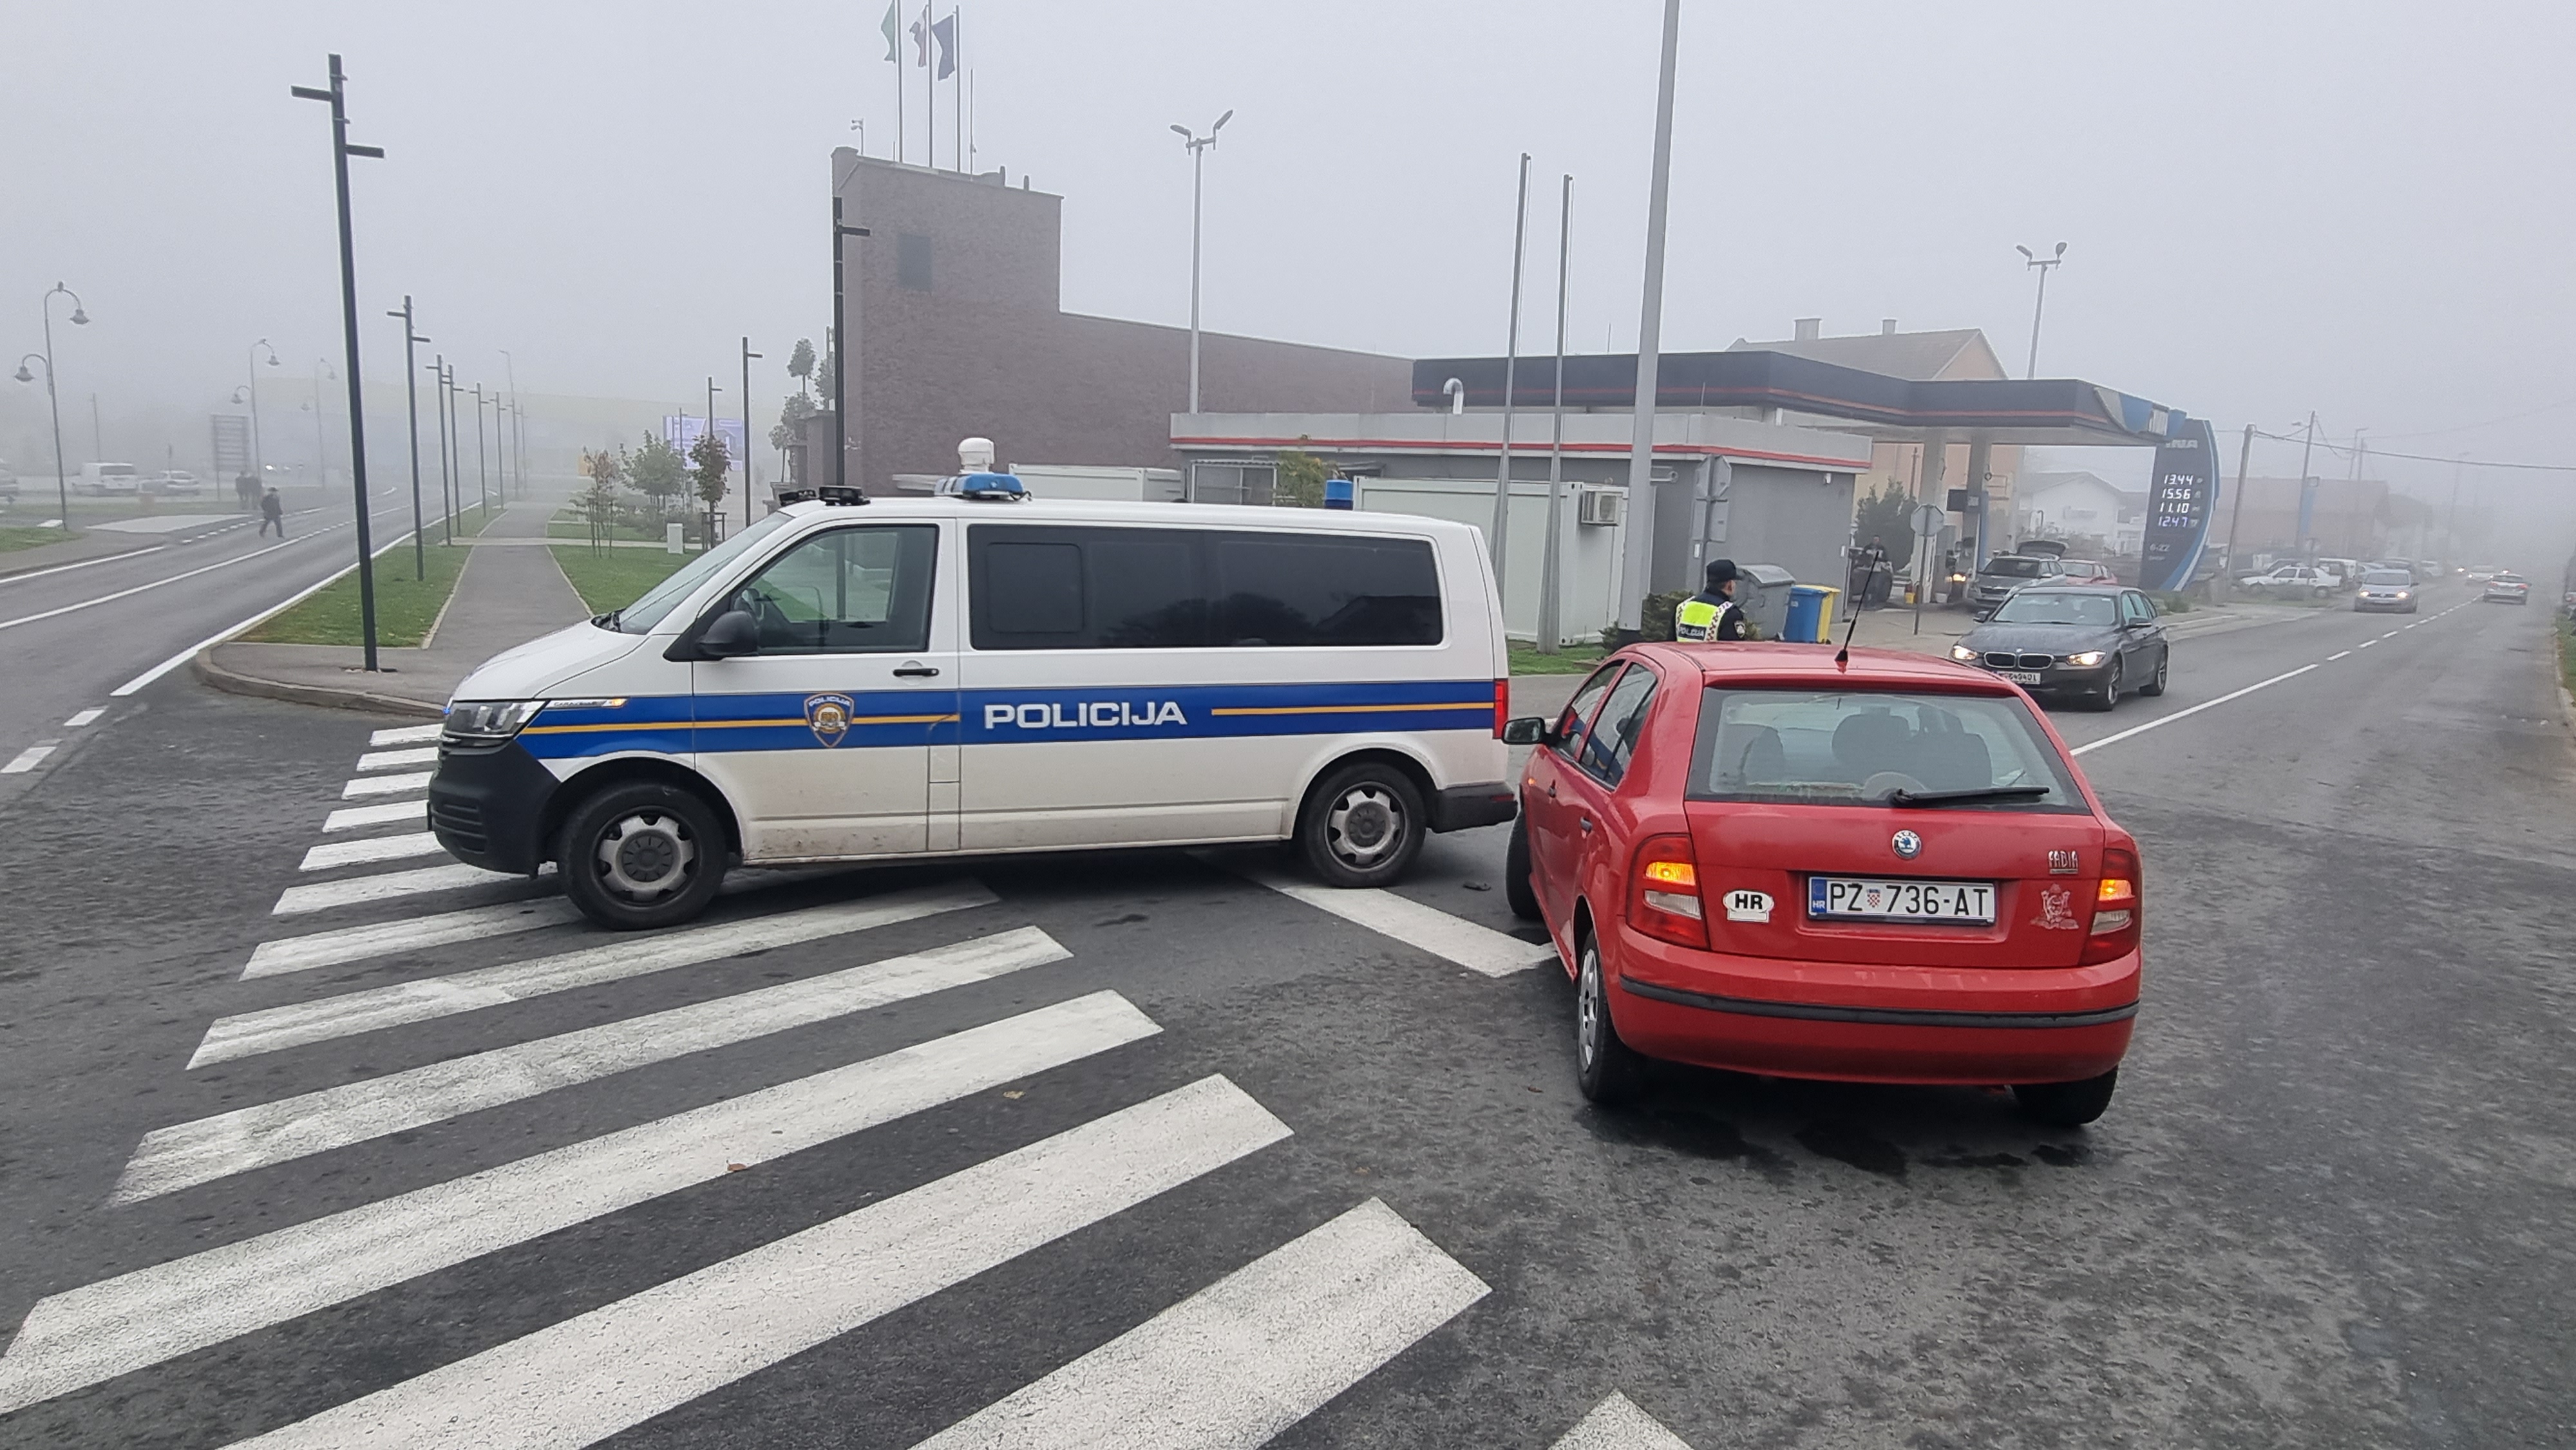 Požega.eu | Škodom u policijski kombi [FOTO]